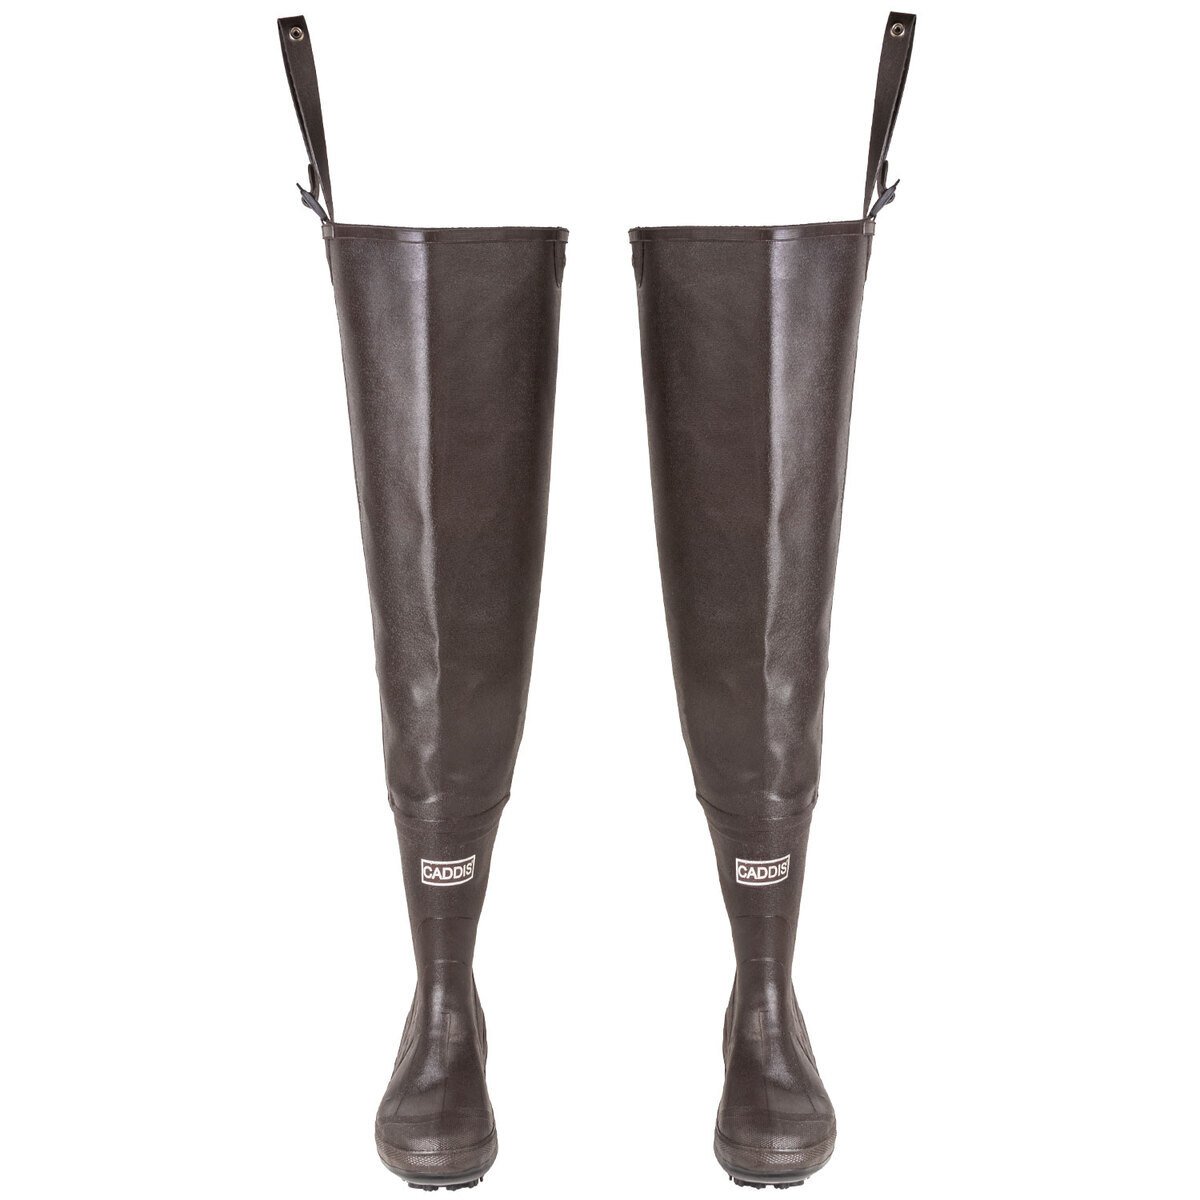 https://www.sportsmans.com/medias/caddis-mens-rubber-cleated-sole-wading-hip-boots-1280655-1.jpg?context=bWFzdGVyfGltYWdlc3wxMDgzMTZ8aW1hZ2UvanBlZ3xhRFJtTDJoak5pOHhNVGsyTVRnMk1UYzJOekU1T0M4eE1qQXdMV052Ym5abGNuTnBiMjVHYjNKdFlYUmZZbUZ6WlMxamIyNTJaWEp6YVc5dVJtOXliV0YwWDNOdGR5MHhNamd3TmpVMUxURXVhbkJufDRmZWM0ZmQ4YjY3ZTc0ZmU3ODc3MDIxZTlkNmE2Njk2ZTg3MzdkZTQxNGFlNzdmNzI3NmQ1YWIxYjdhOTkyMjU